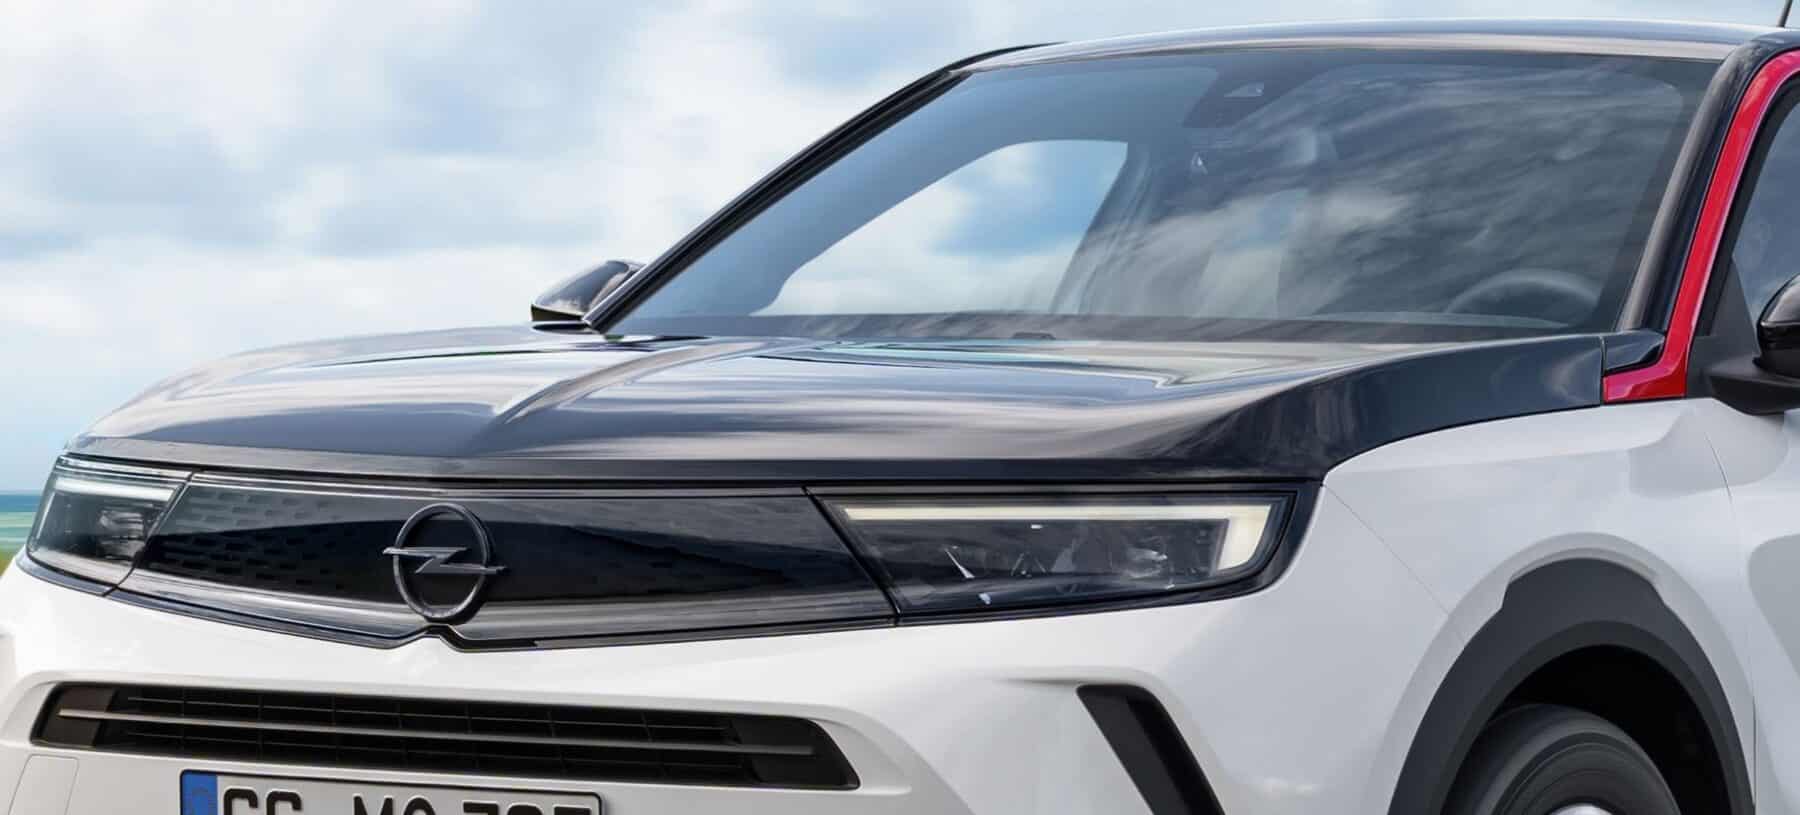 El Opel Insignia tendrá sustituto eléctrico «made in Italy»